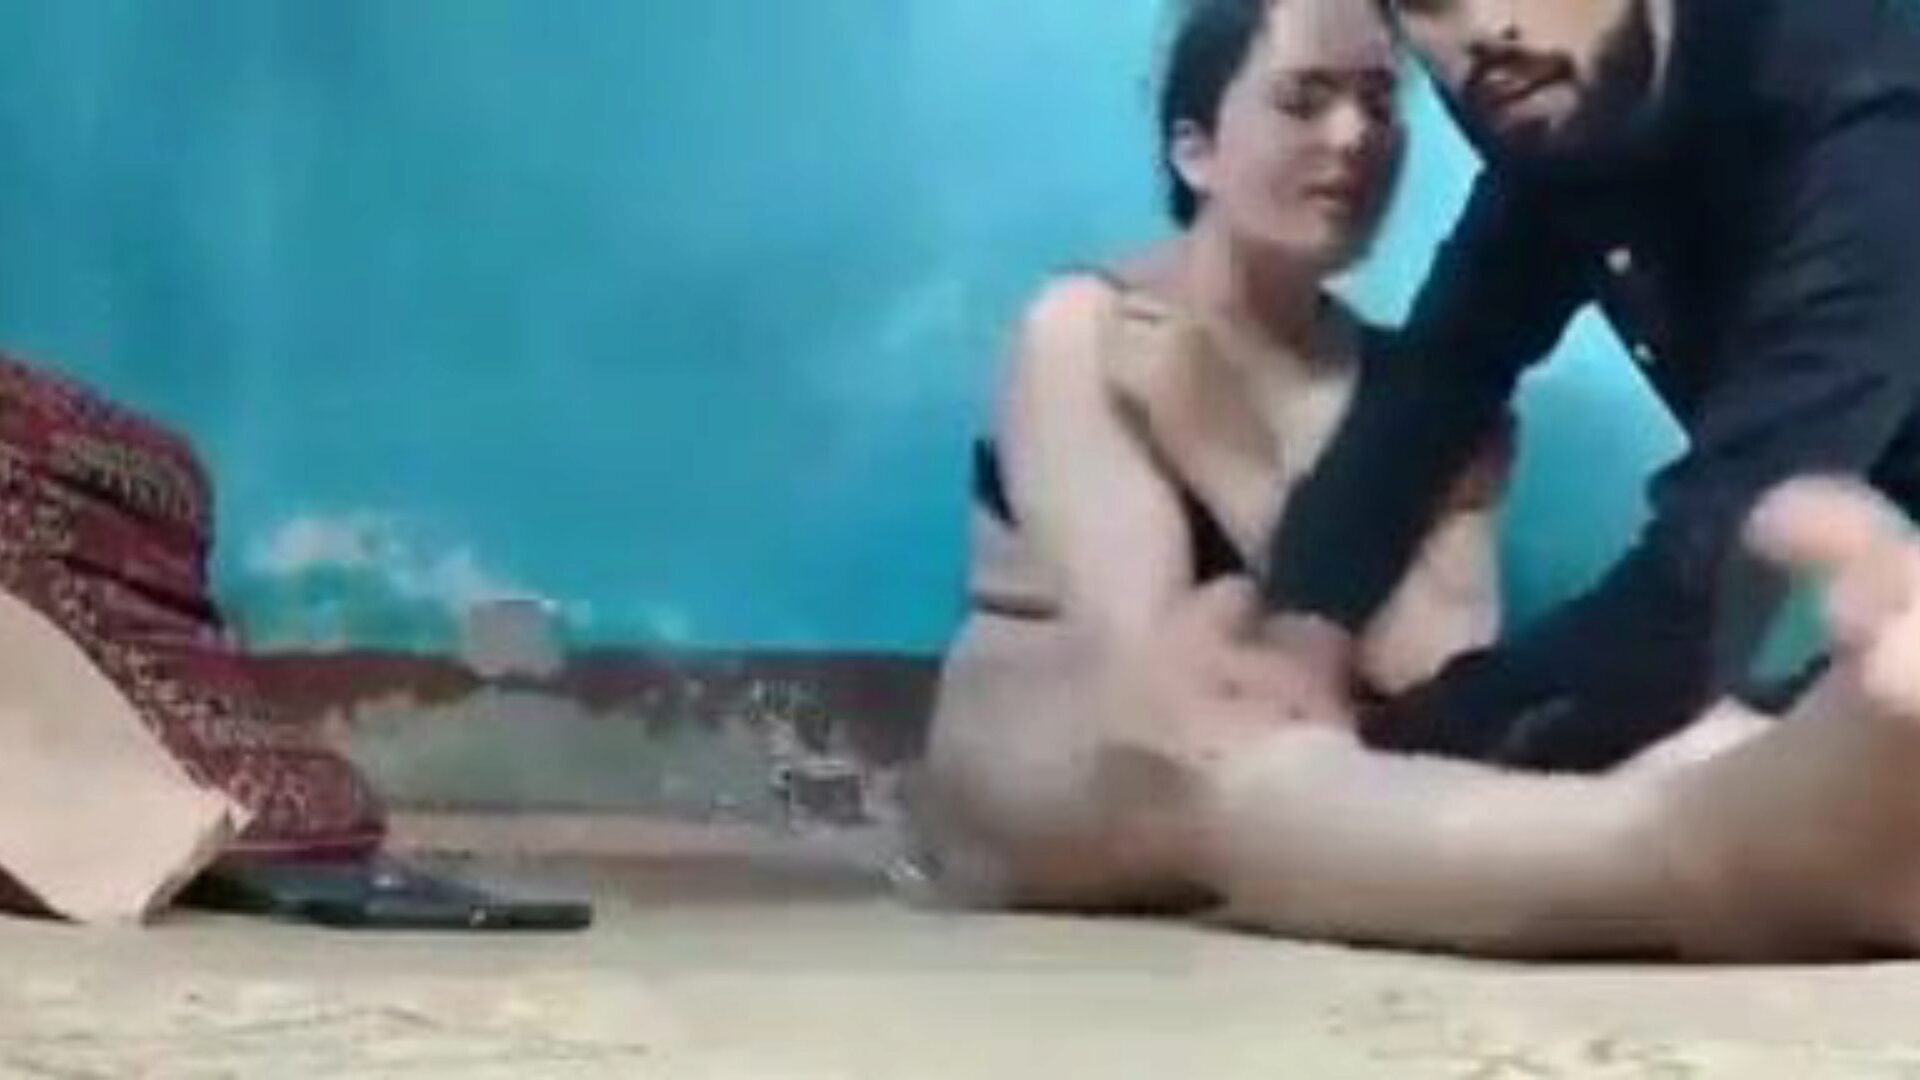 video sexe kashmiri: video porno indien gratuit 69 - xhamster regarder kashmiri sex video tube bang-out video gratuitement sur xhamster, avec la collection la plus sexy de scènes d'épisodes pornos indiens xxx de sexe et d'histoire gratuits